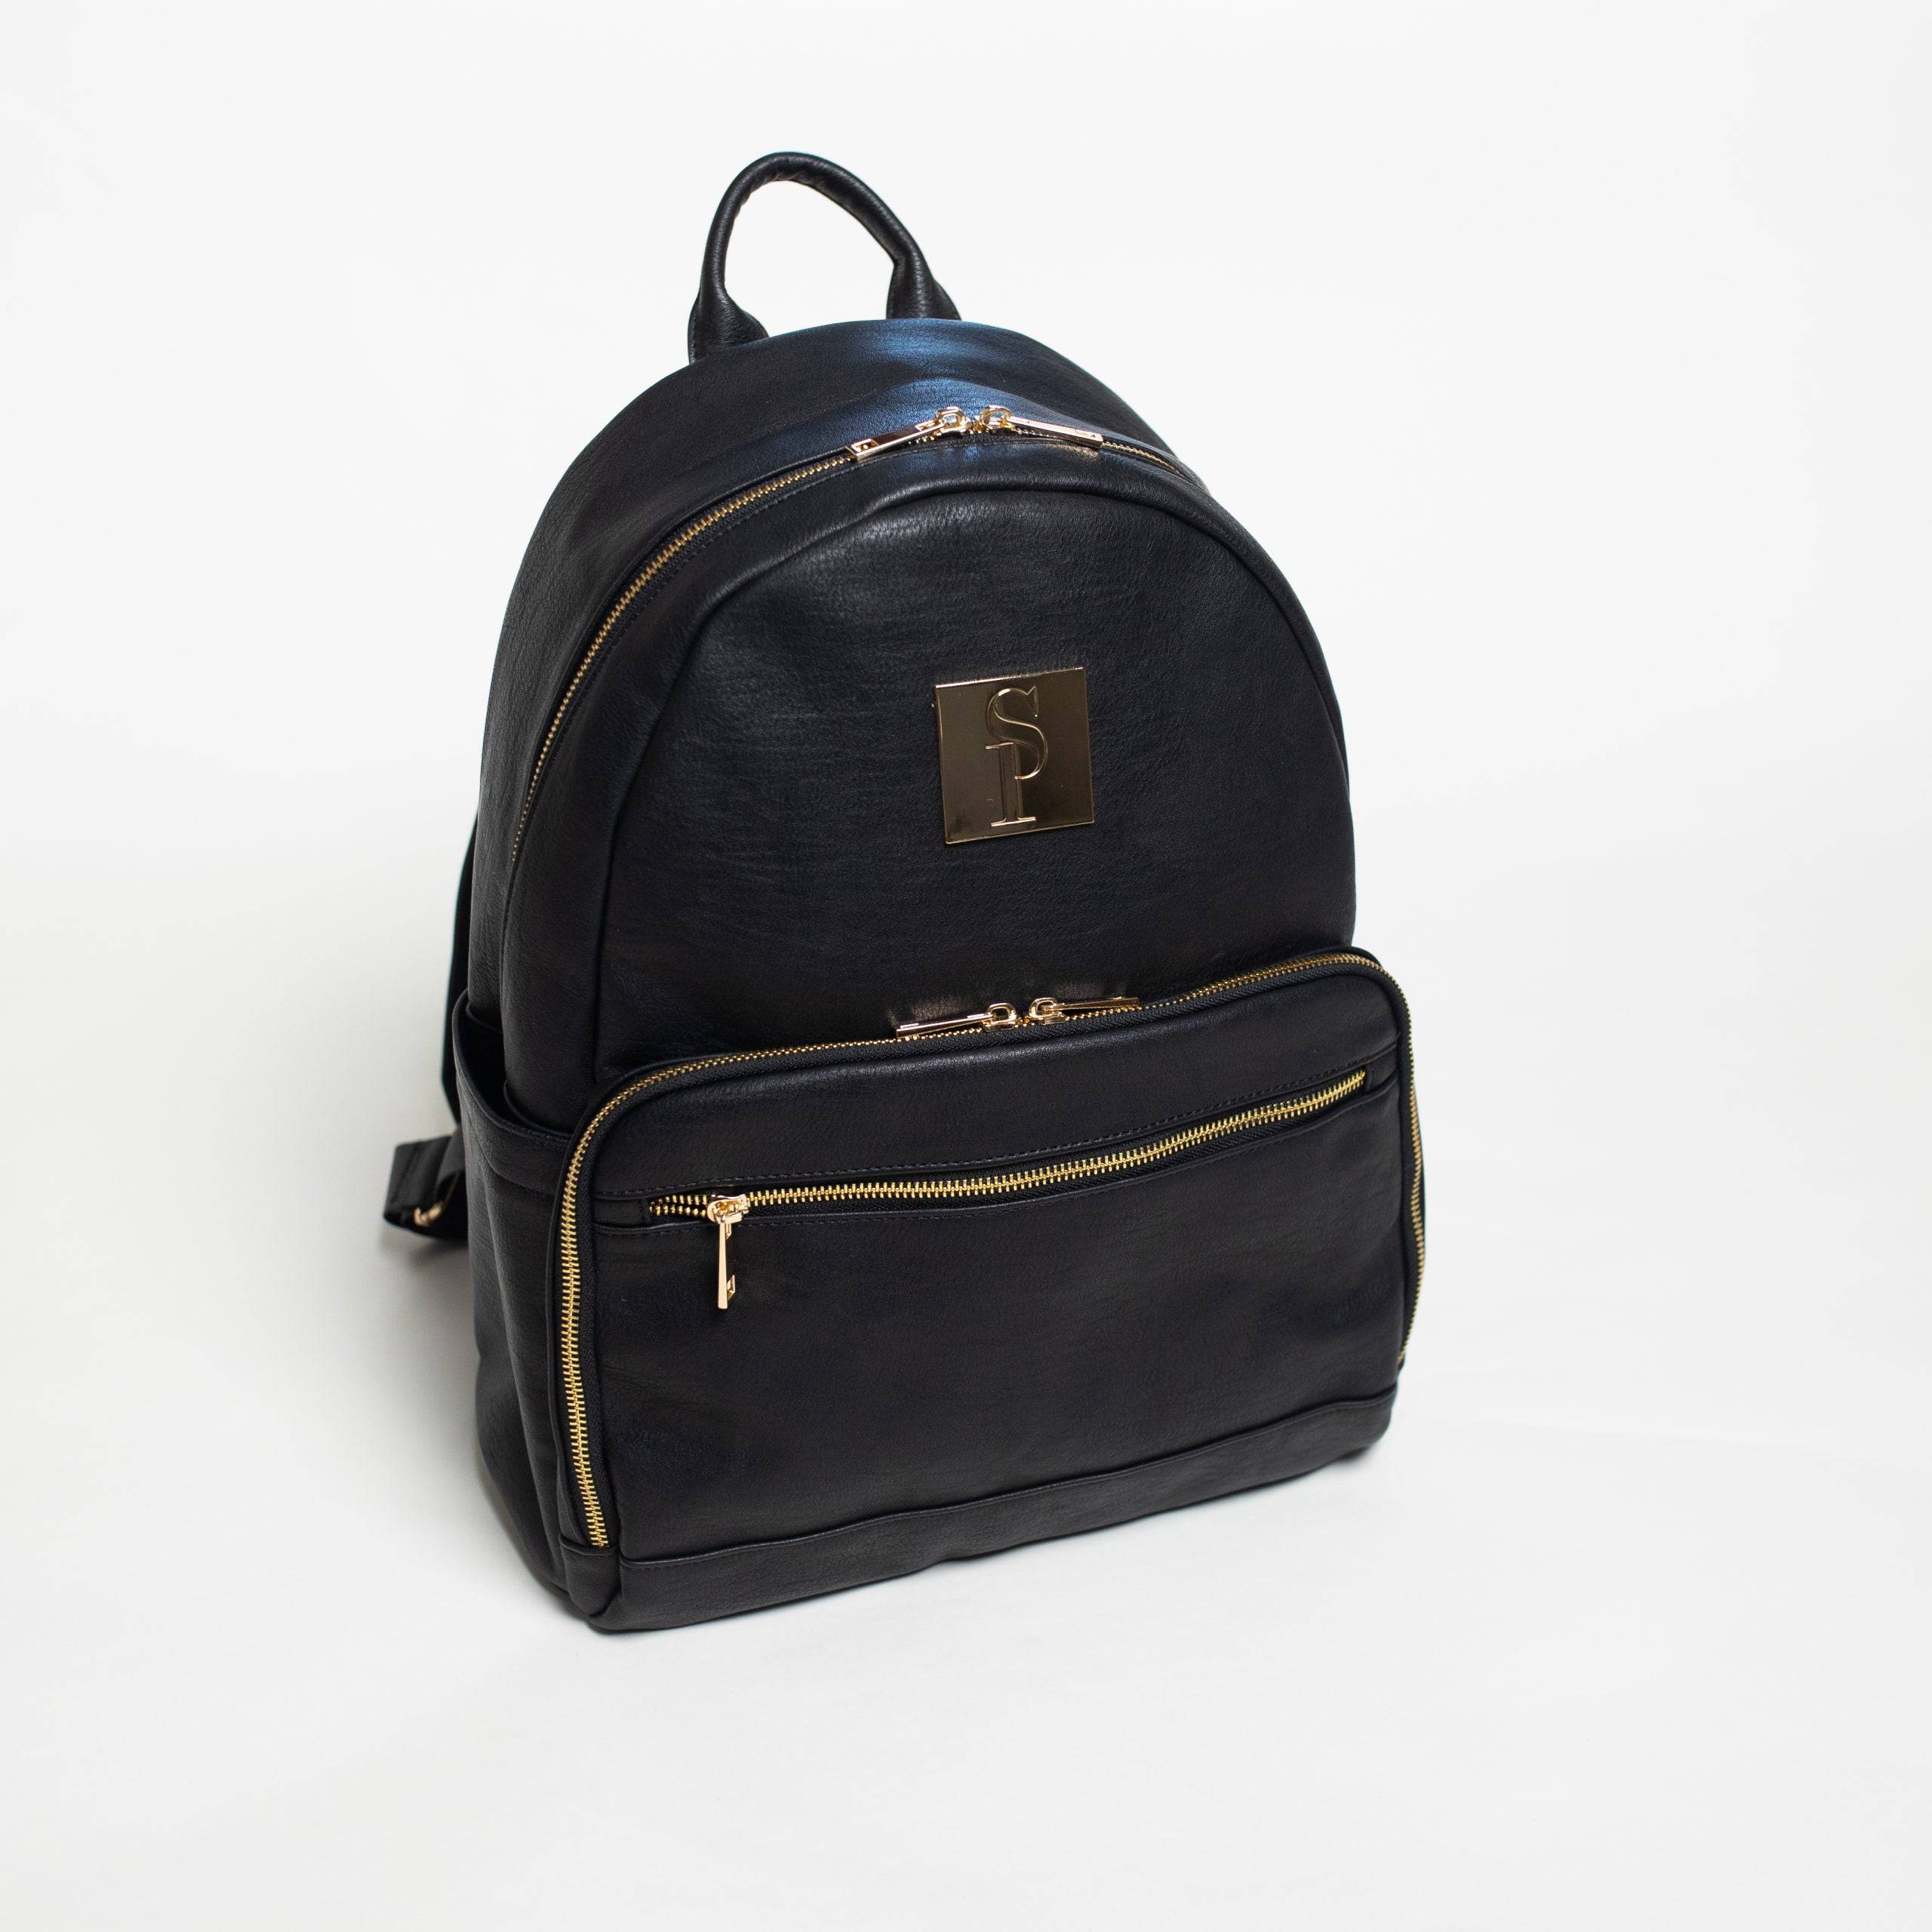 Black Carrier Leather Backpack - Designer Diaper Bag